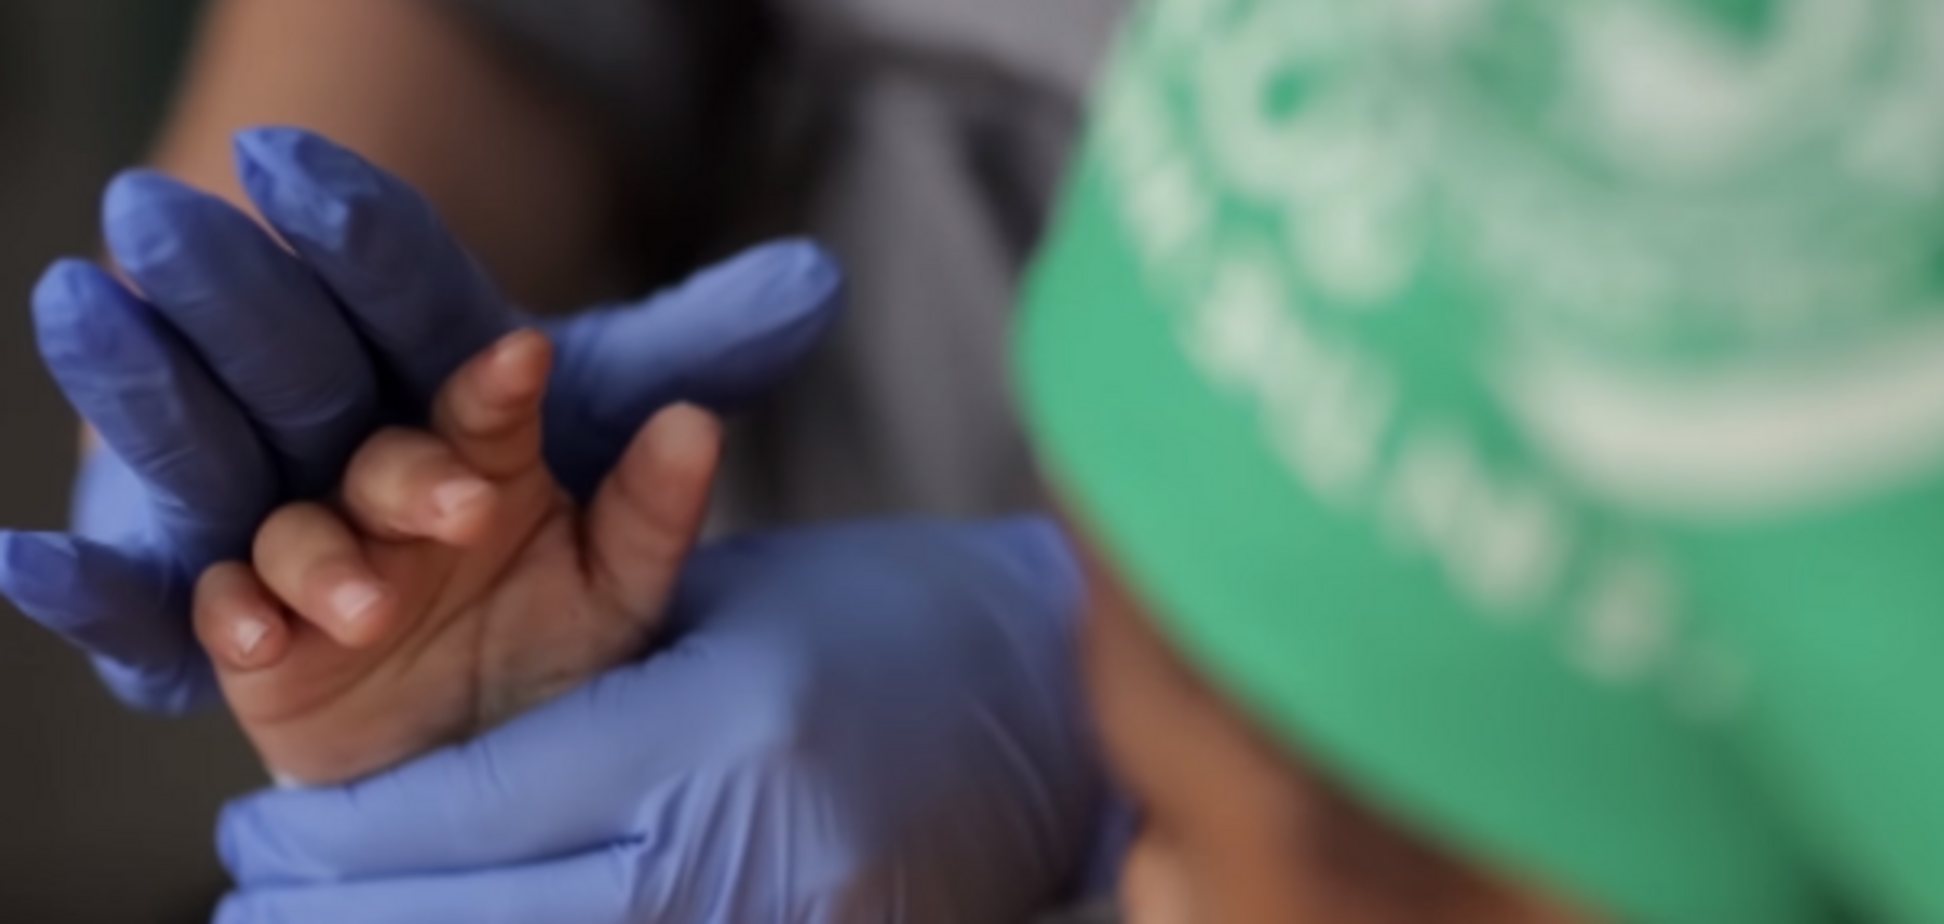 Чудо трансплантации: впервые ребенку пересадили обе руки, и он уже пишет и одевается